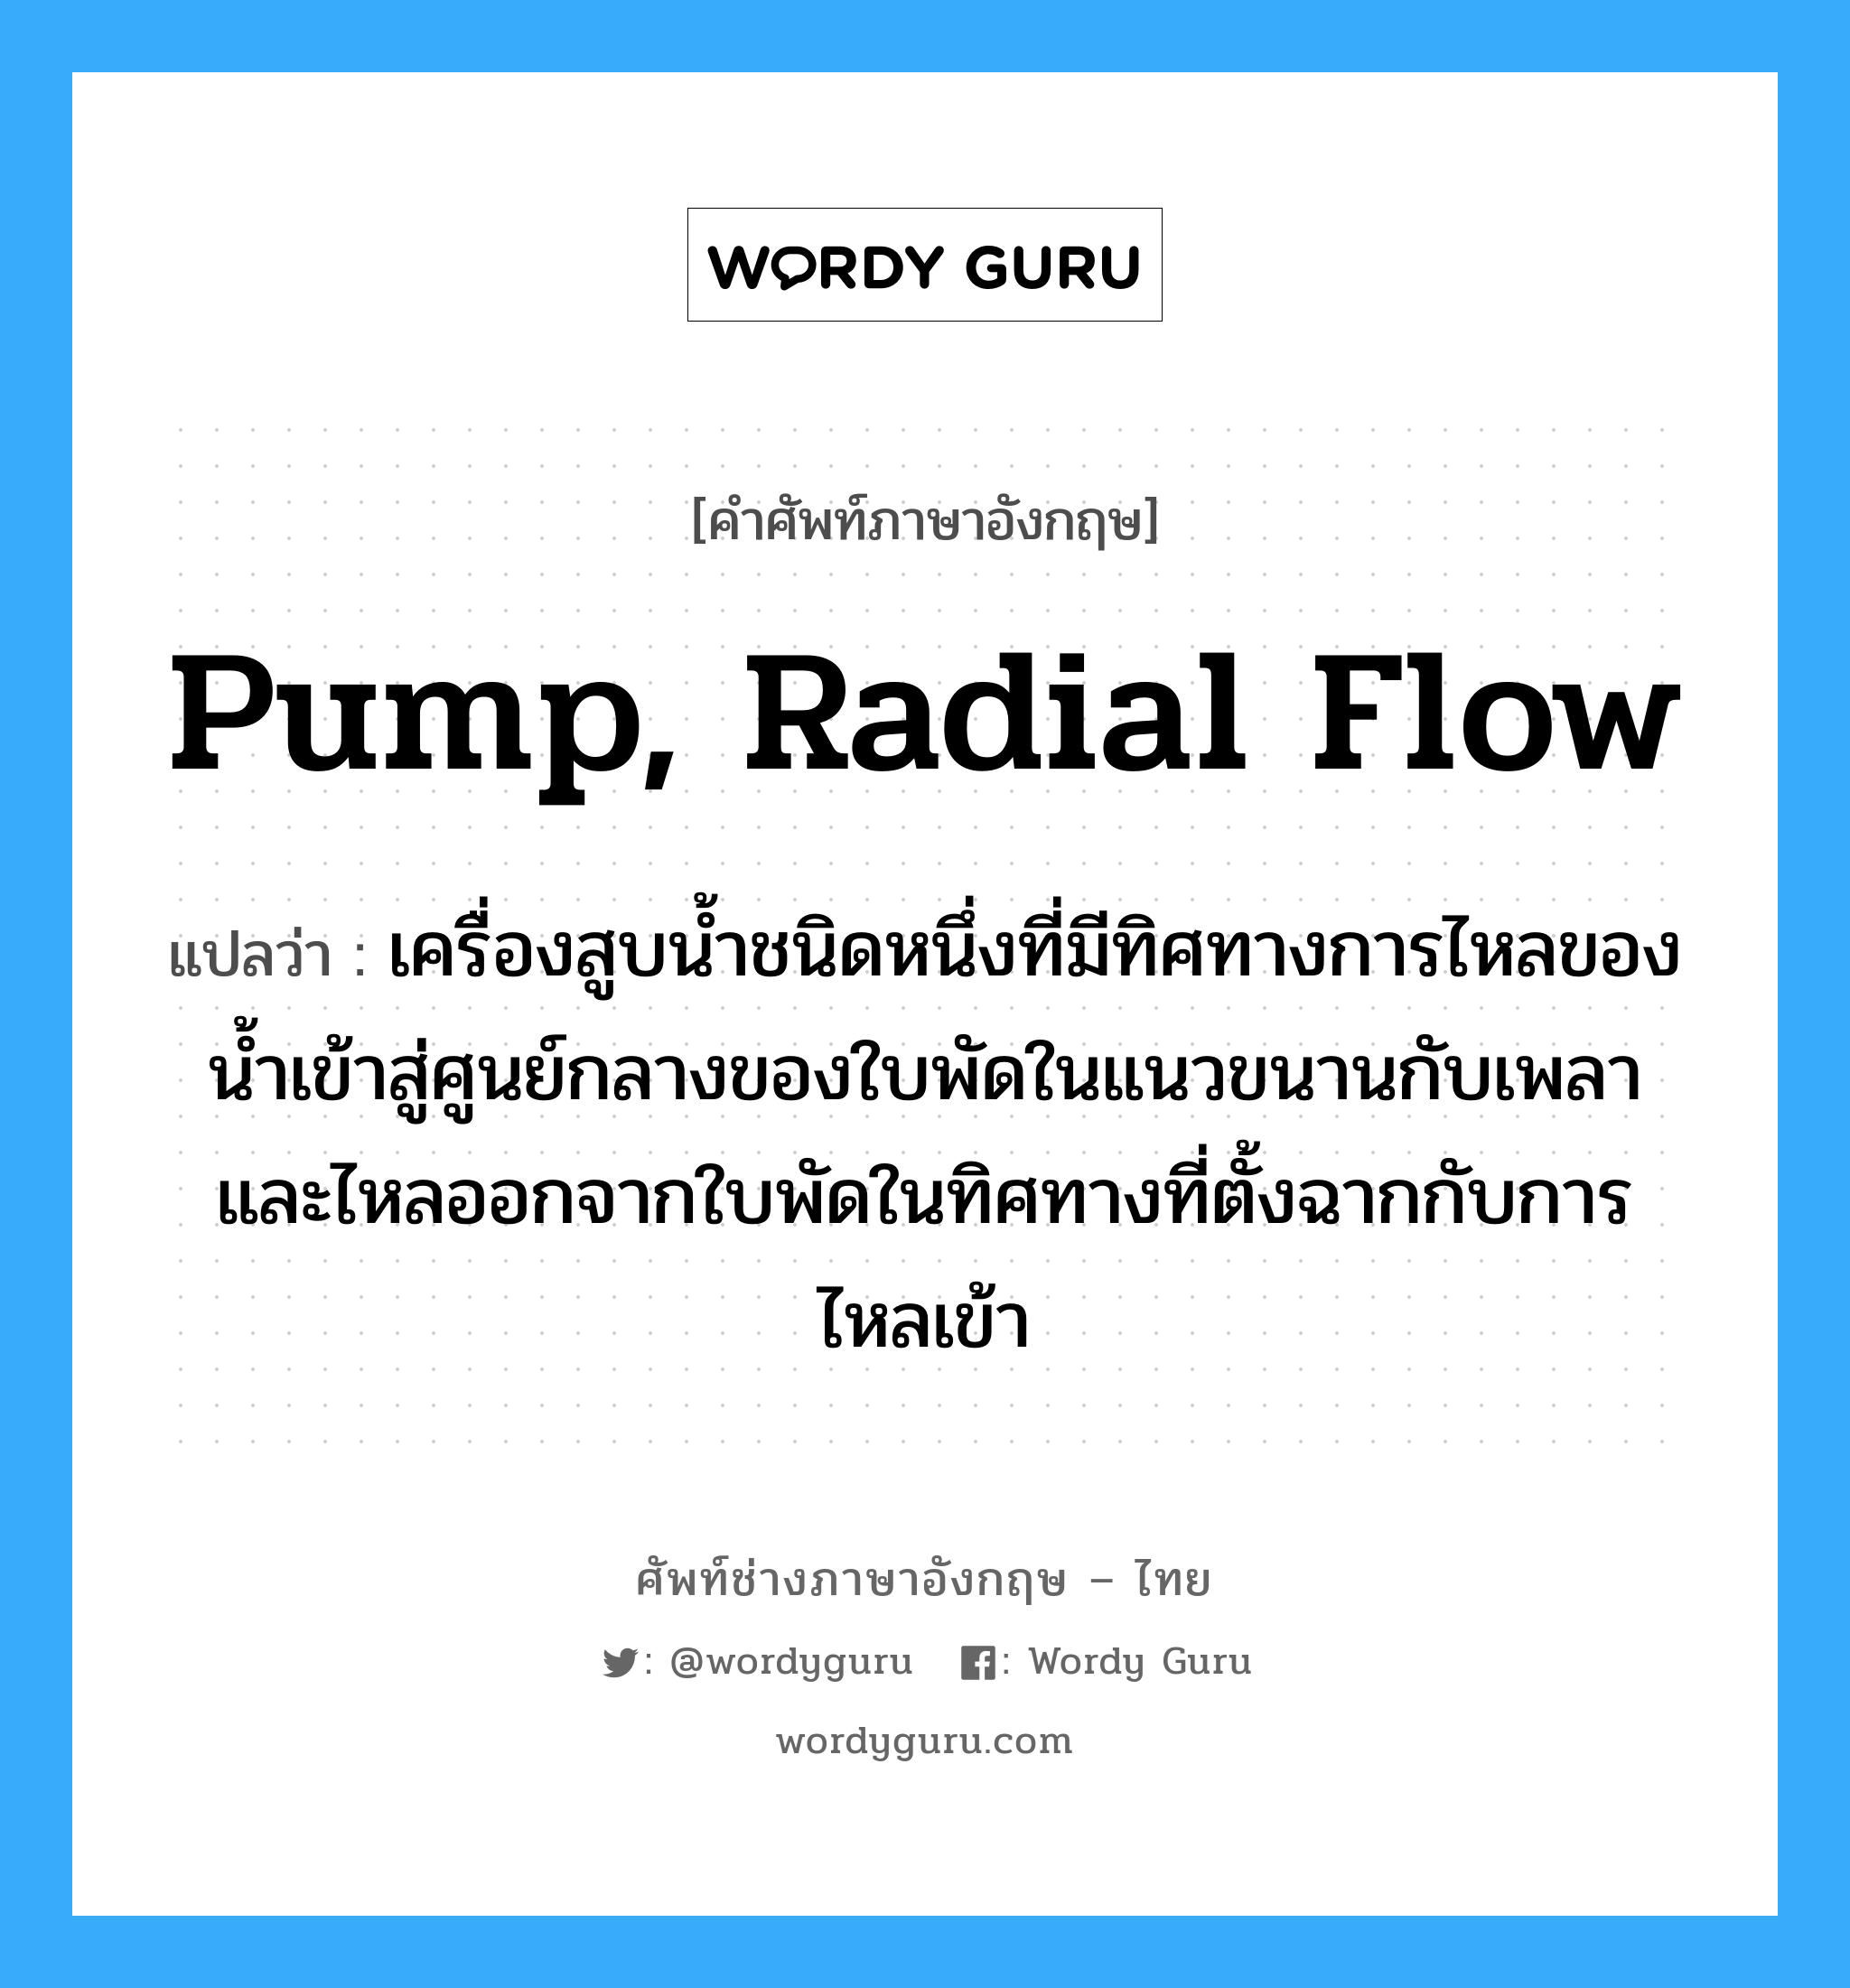 เครื่องสูบน้ำชนิดหนึ่งที่มีทิศทางการไหลของน้ำเข้าสู่และออกจากใบพัดขนานกับแกนของเพลา ภาษาอังกฤษ?, คำศัพท์ช่างภาษาอังกฤษ - ไทย เครื่องสูบน้ำชนิดหนึ่งที่มีทิศทางการไหลของน้ำเข้าสู่ศูนย์กลางของใบพัดในแนวขนานกับเพลาและไหลออกจากใบพัดในทิศทางที่ตั้งฉากกับการไหลเข้า คำศัพท์ภาษาอังกฤษ เครื่องสูบน้ำชนิดหนึ่งที่มีทิศทางการไหลของน้ำเข้าสู่ศูนย์กลางของใบพัดในแนวขนานกับเพลาและไหลออกจากใบพัดในทิศทางที่ตั้งฉากกับการไหลเข้า แปลว่า pump, radial flow